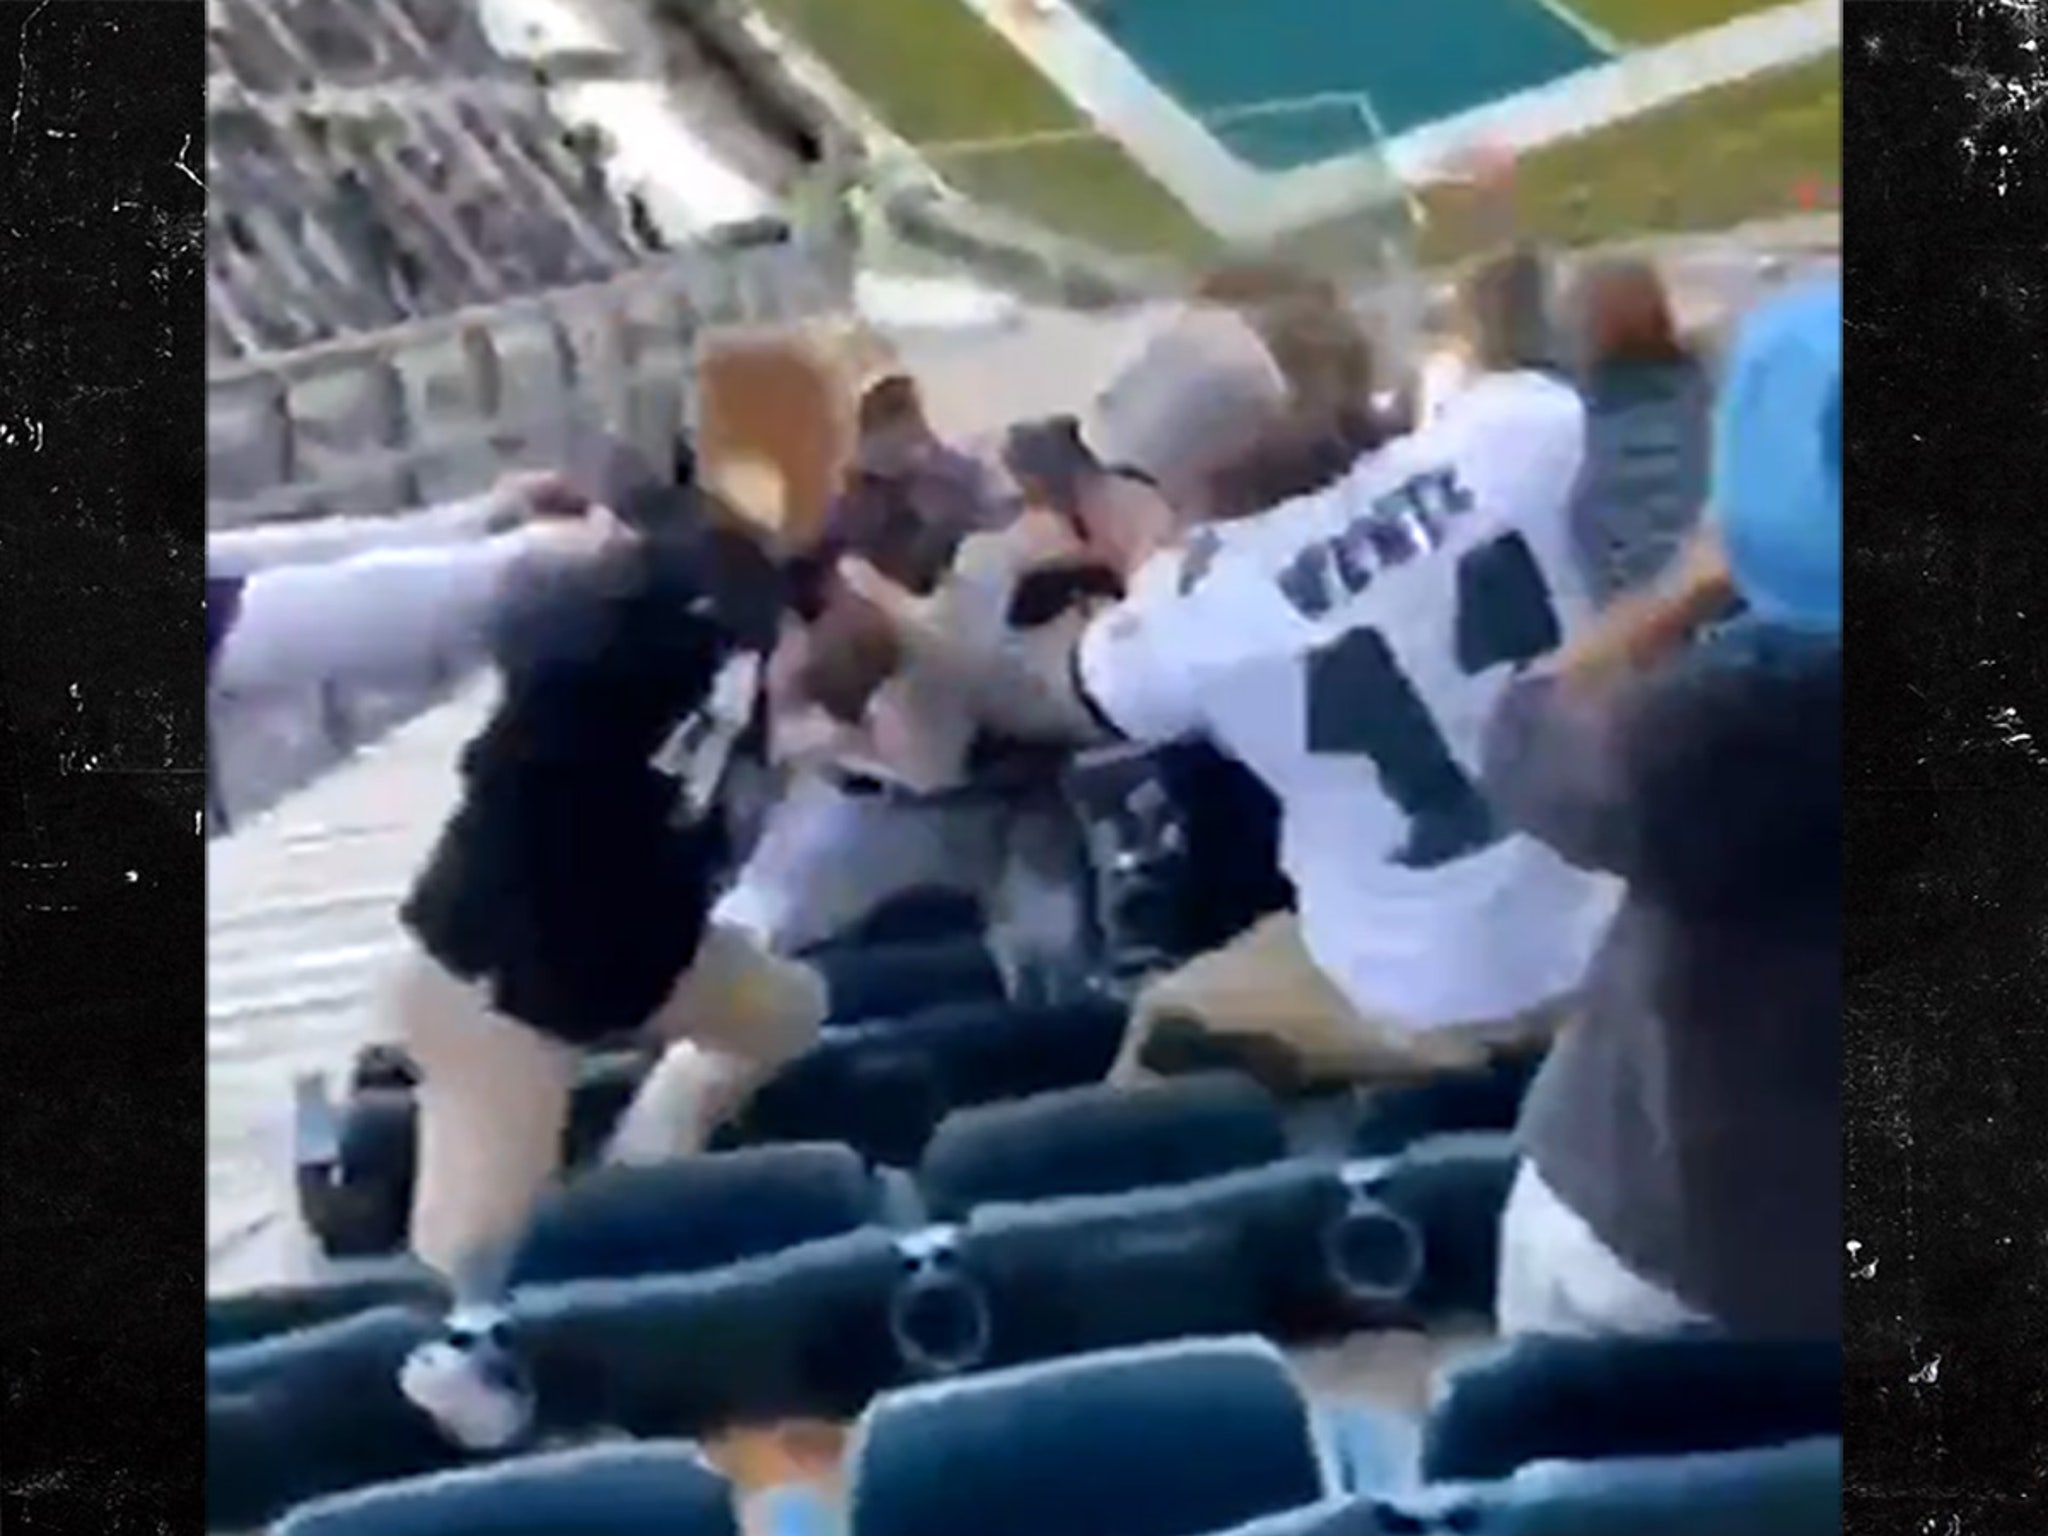 Eagles Fans Get In Violent Fistfight In Stands Despite Social Distancing